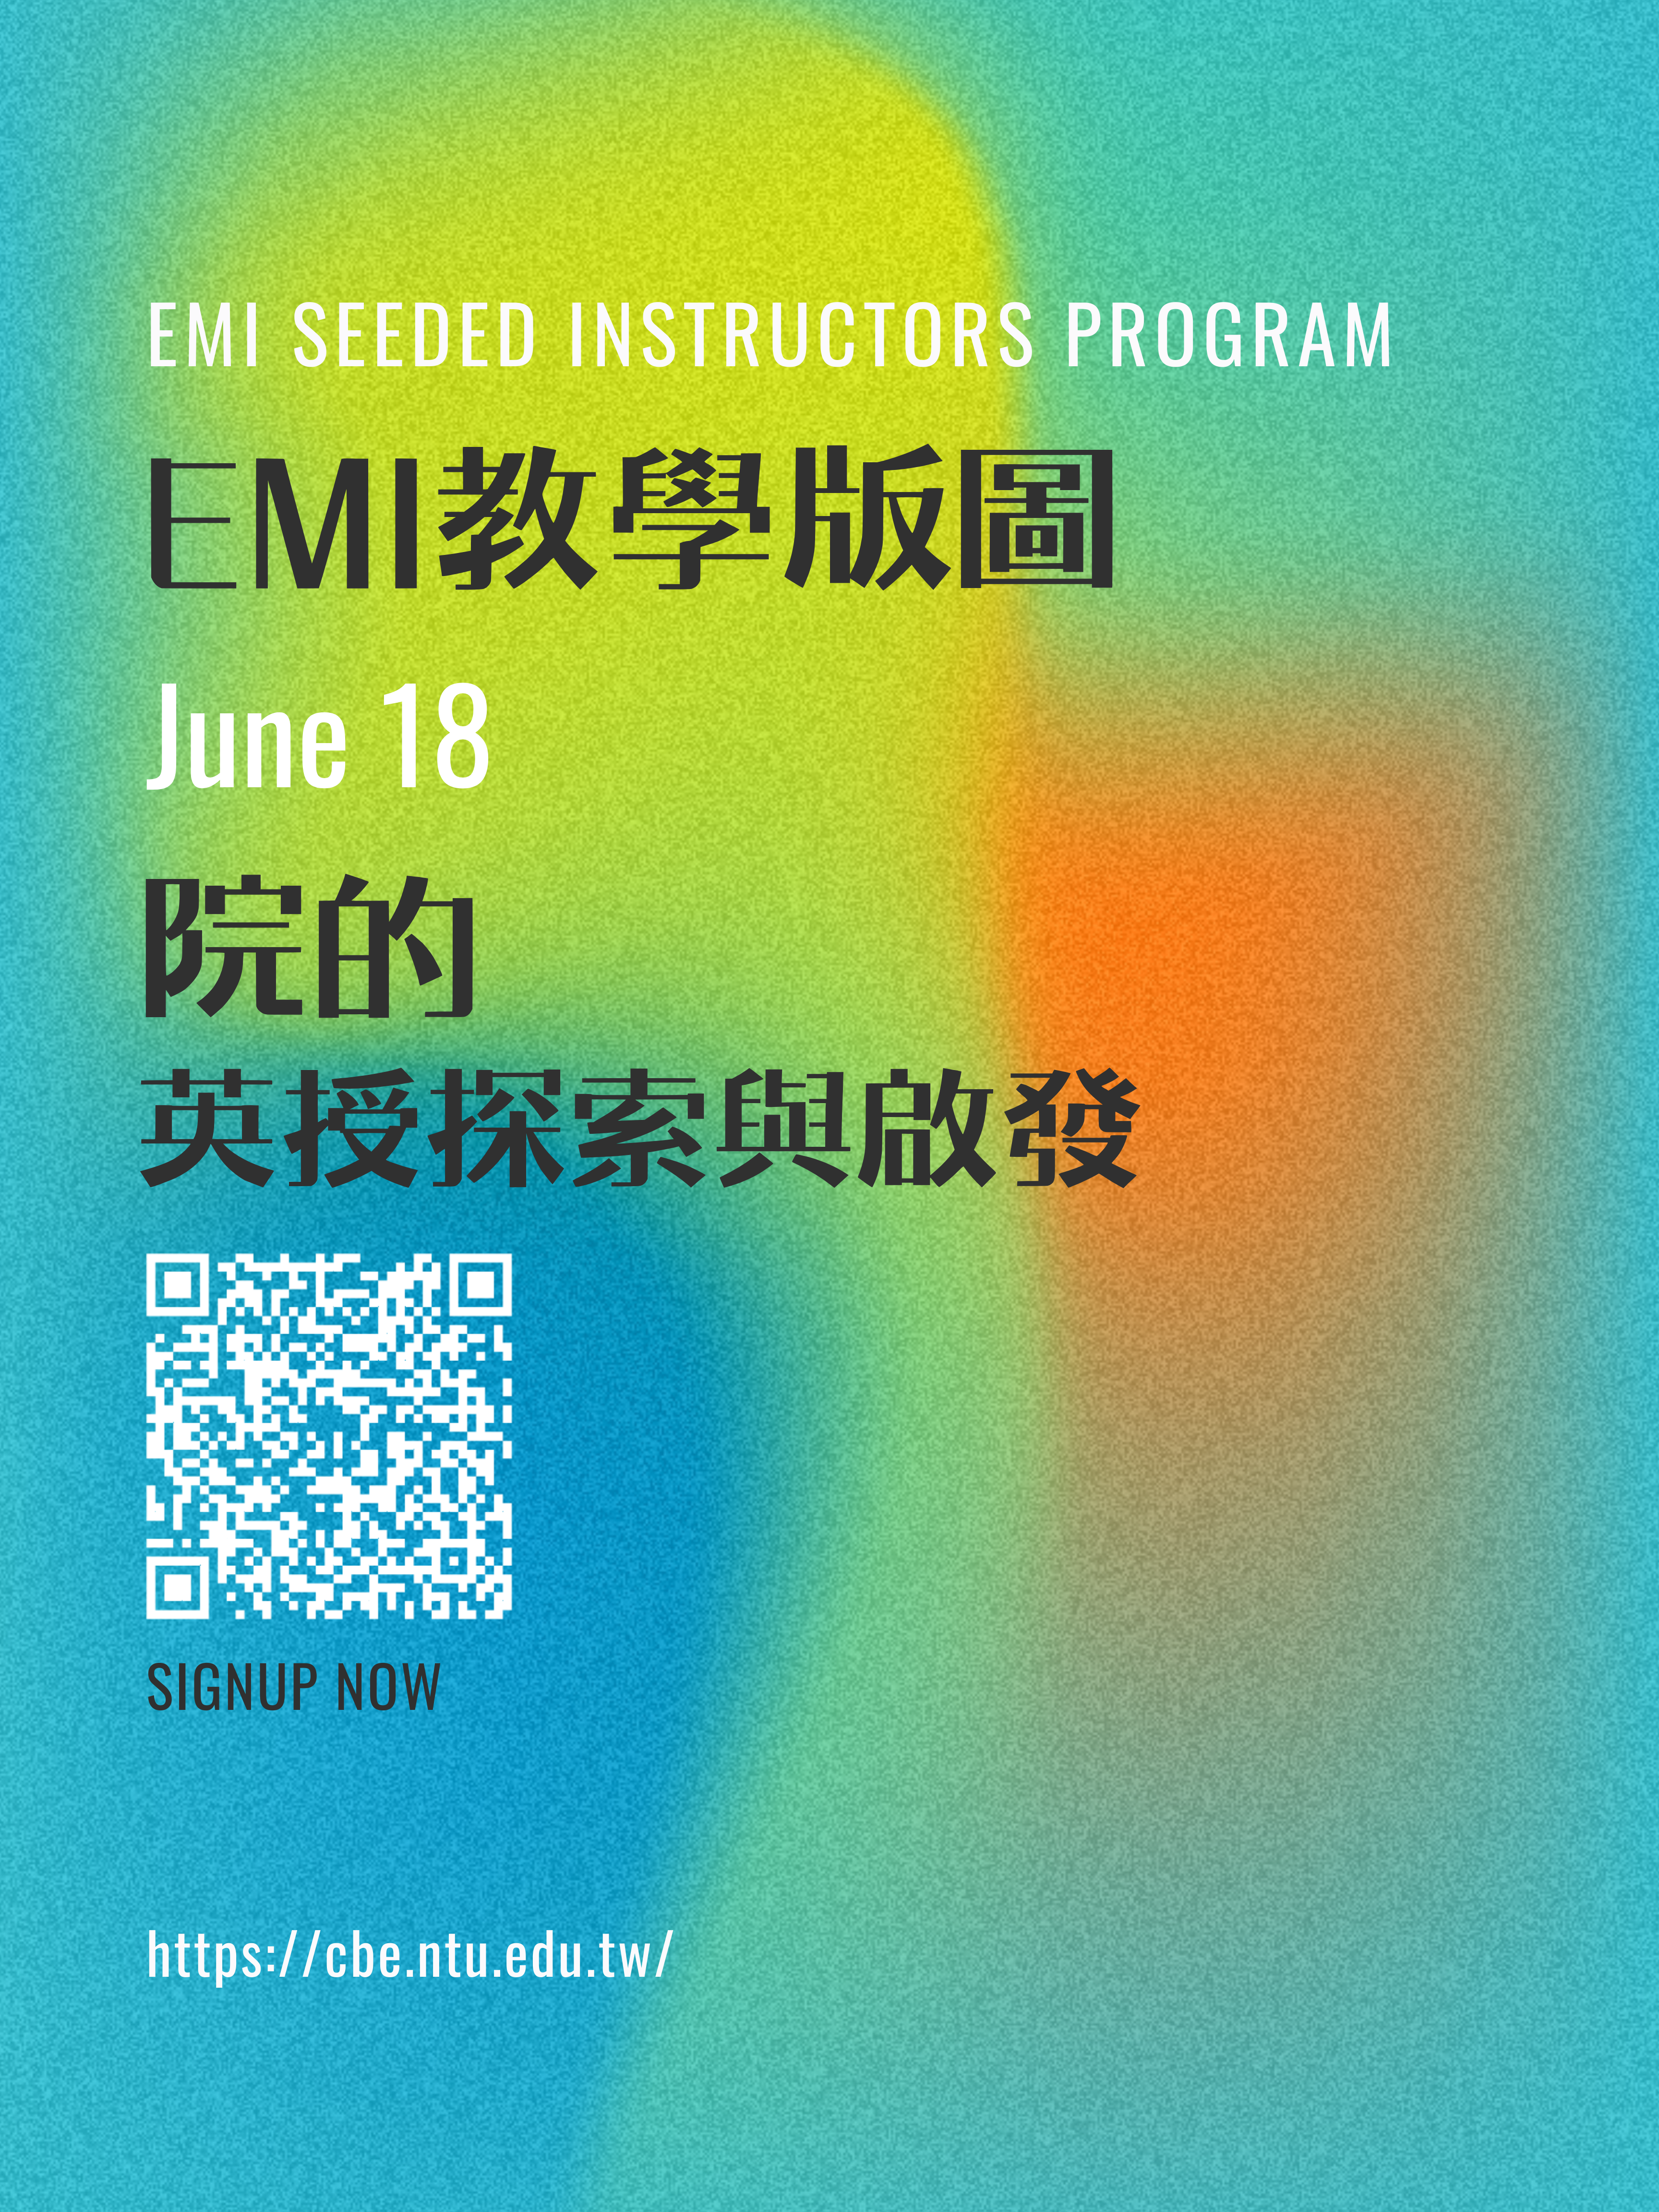 EMI教學版圖-各院英授探索與啟發